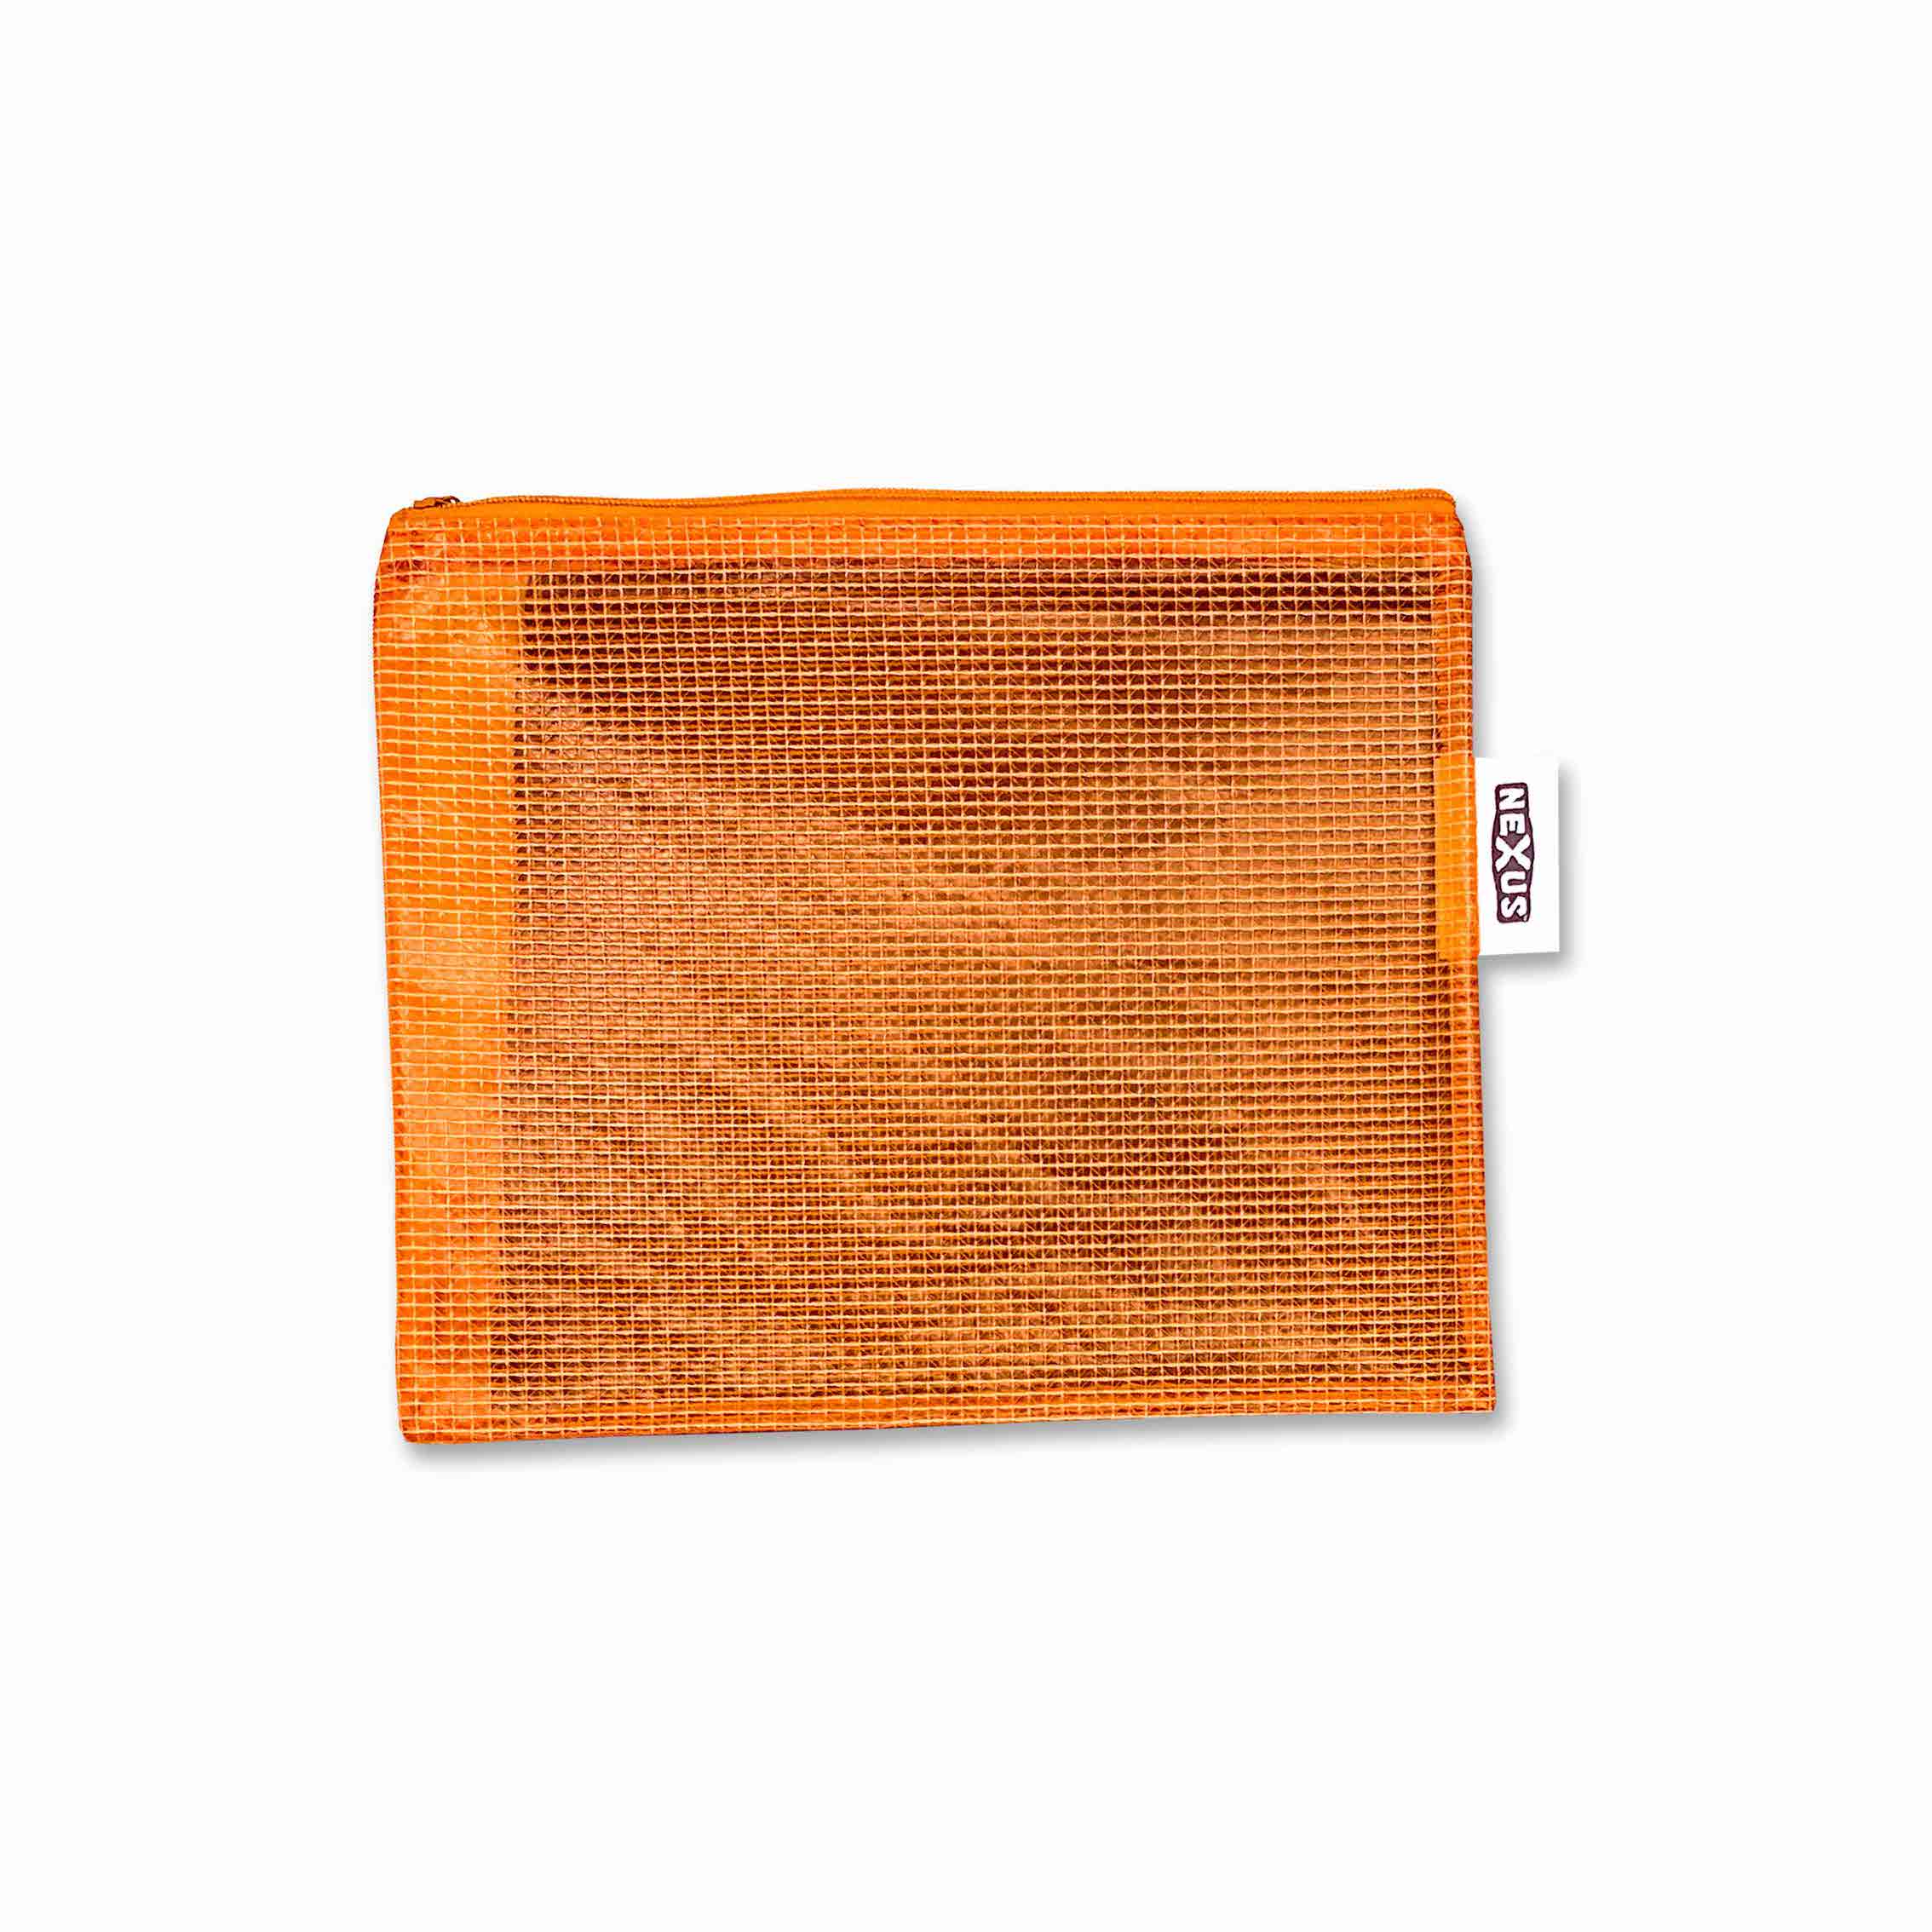 Essential Tough Kit Bag 18cm x 22 cm Orange – 1 pc